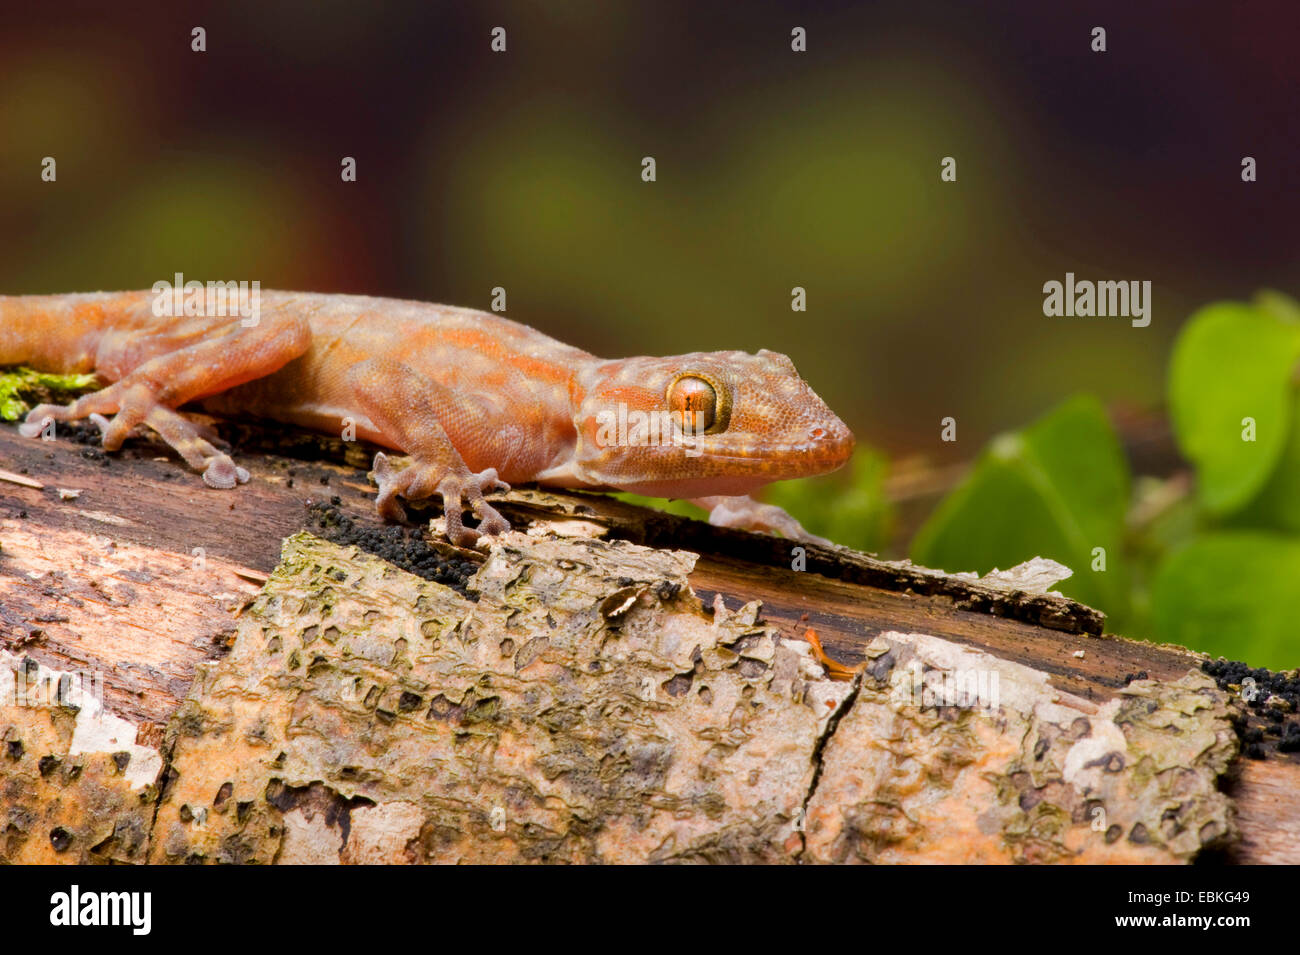 Ragazzi's fan-footed gecko, Fan-toed gecko, Yellow fan-fingered gecko (Ptyodactylus ragazzii), side view Stock Photo